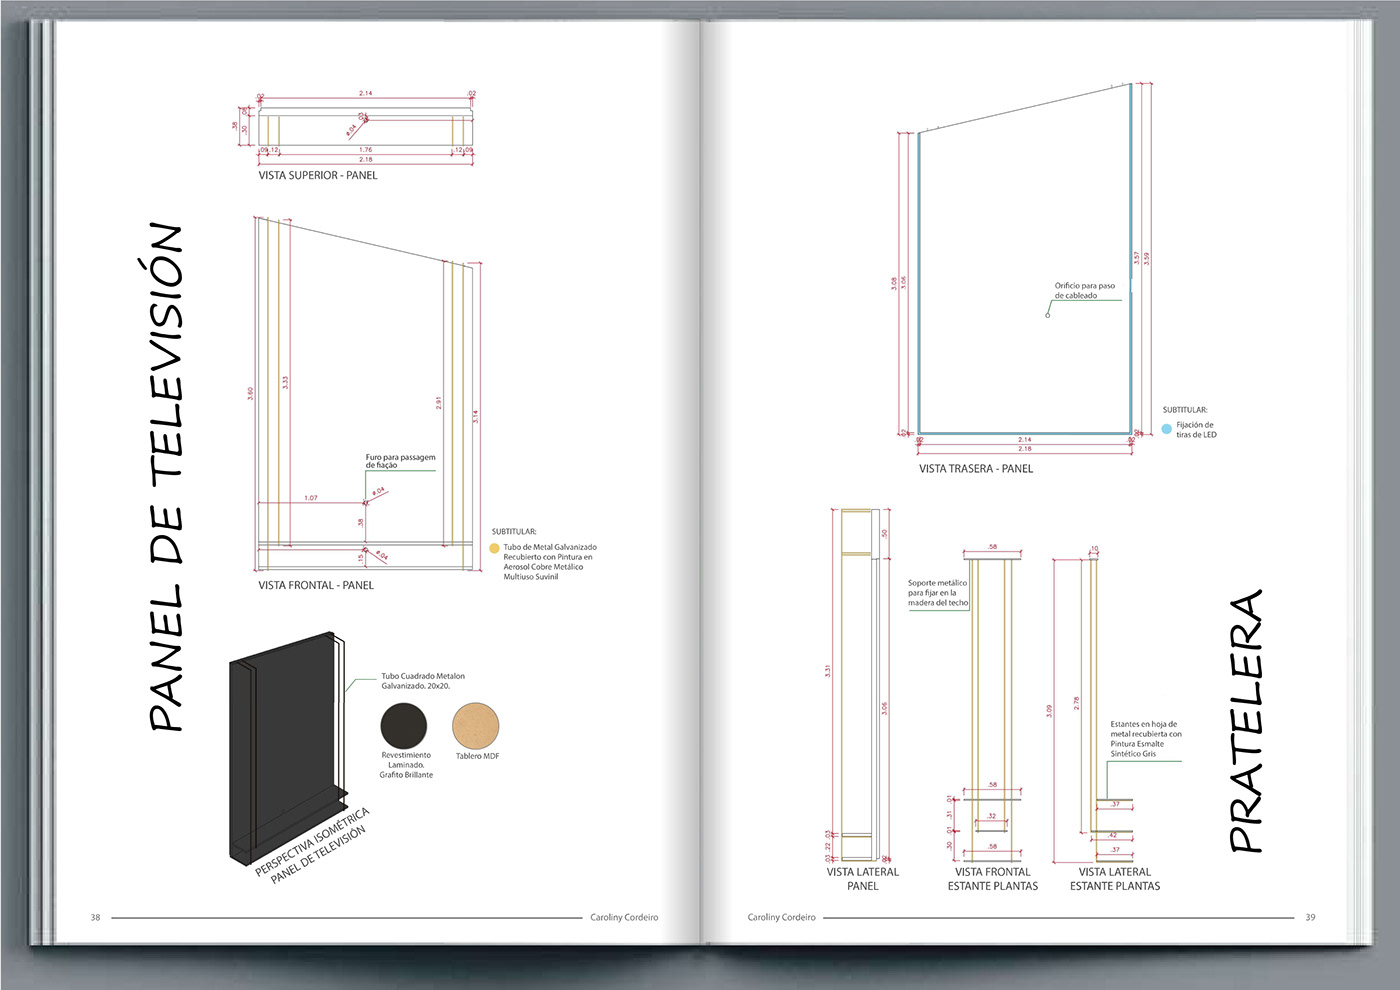 portafolio portafolio arquitectura architecture modern 3D interior design  vray SketchUP ARQUITETURA Render